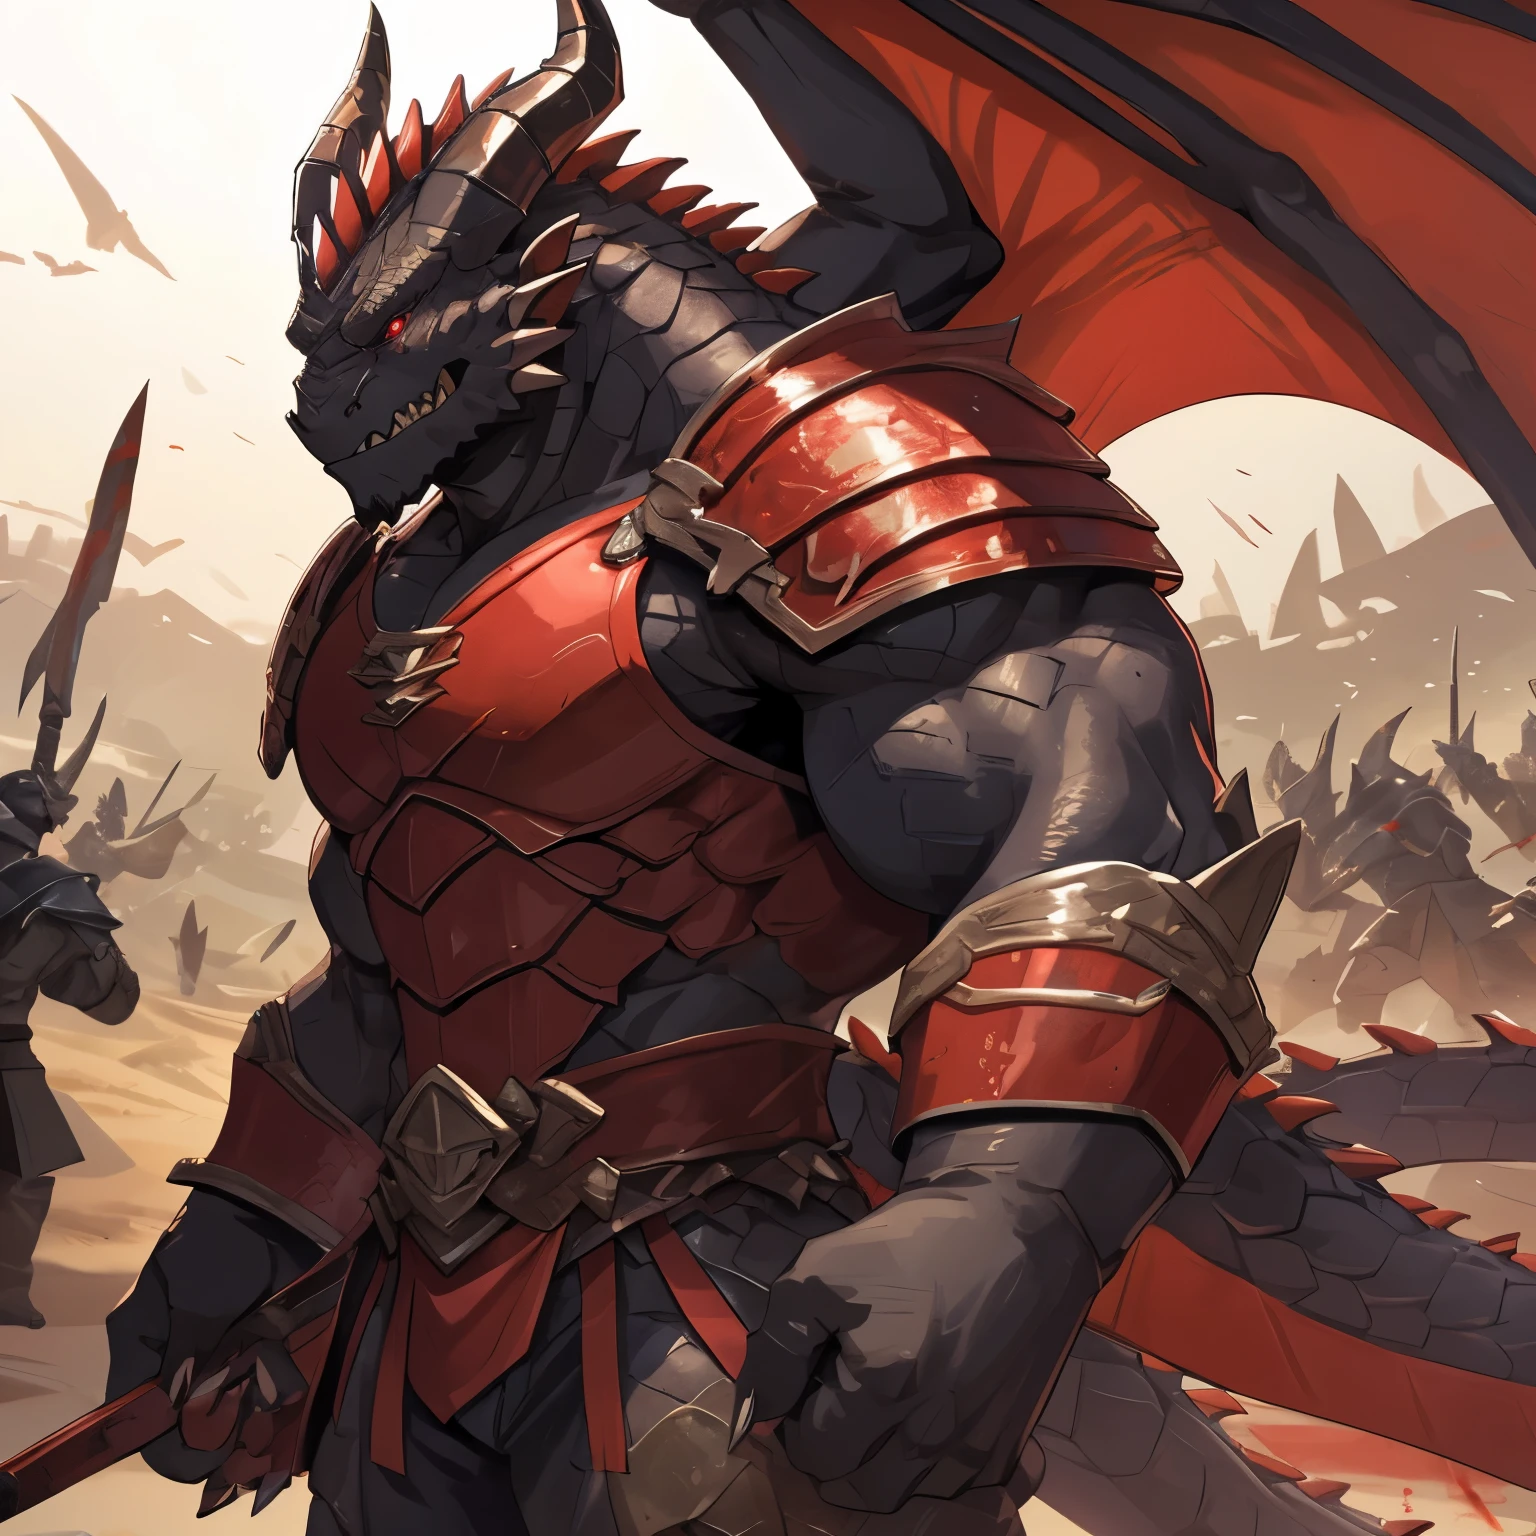 ドラゴンオーク，男，強靭な体格。黒い皮膚は硬い, 太いスケール，背中には真っ赤な翼が一対ある。長さ, 鋭い歯、ドラゴンの角と爪。戦場に立つ，赤い鎧を着て